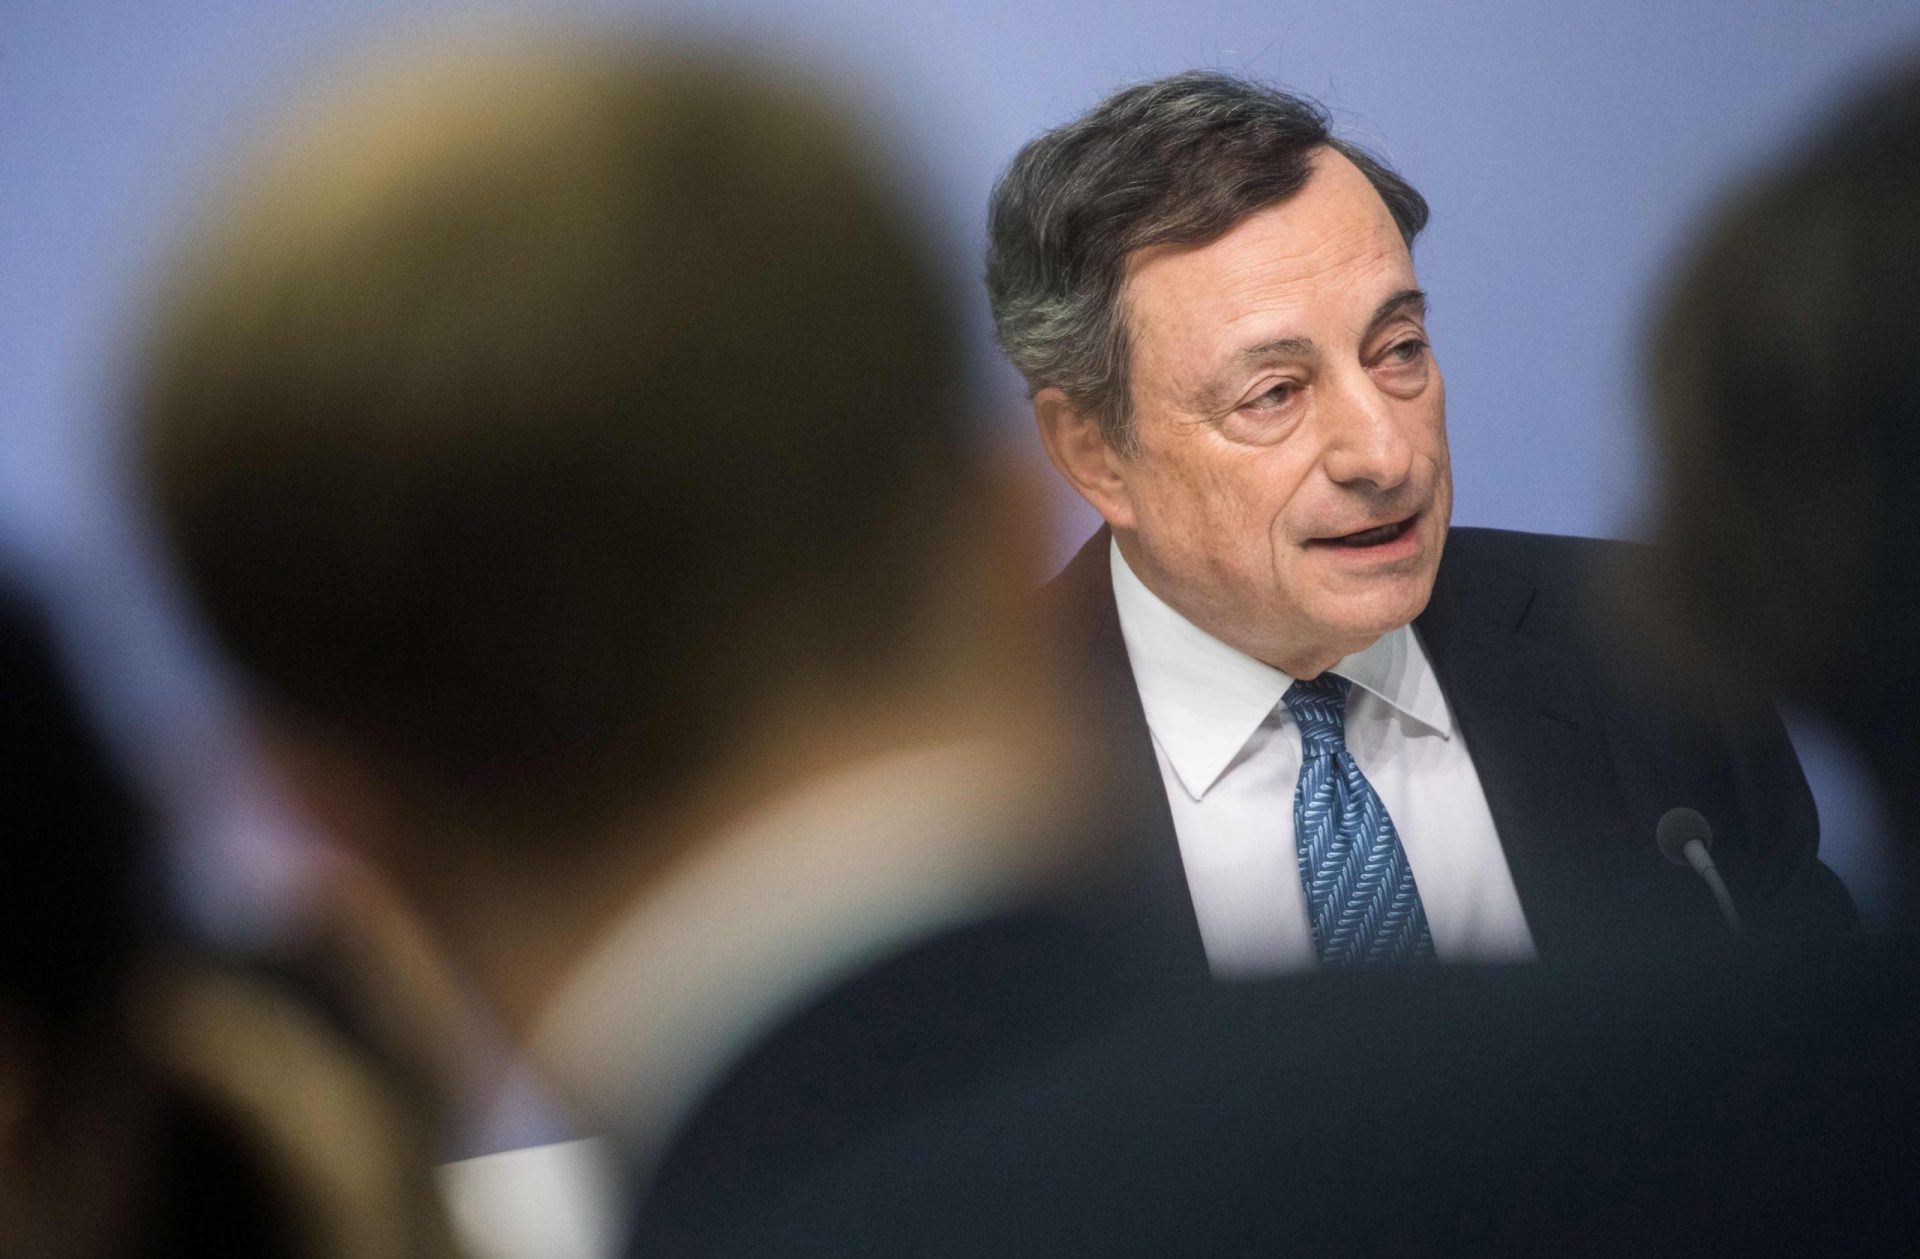 Mario Draghi fala em “progressos notáveis” mas deixa aviso a Costa